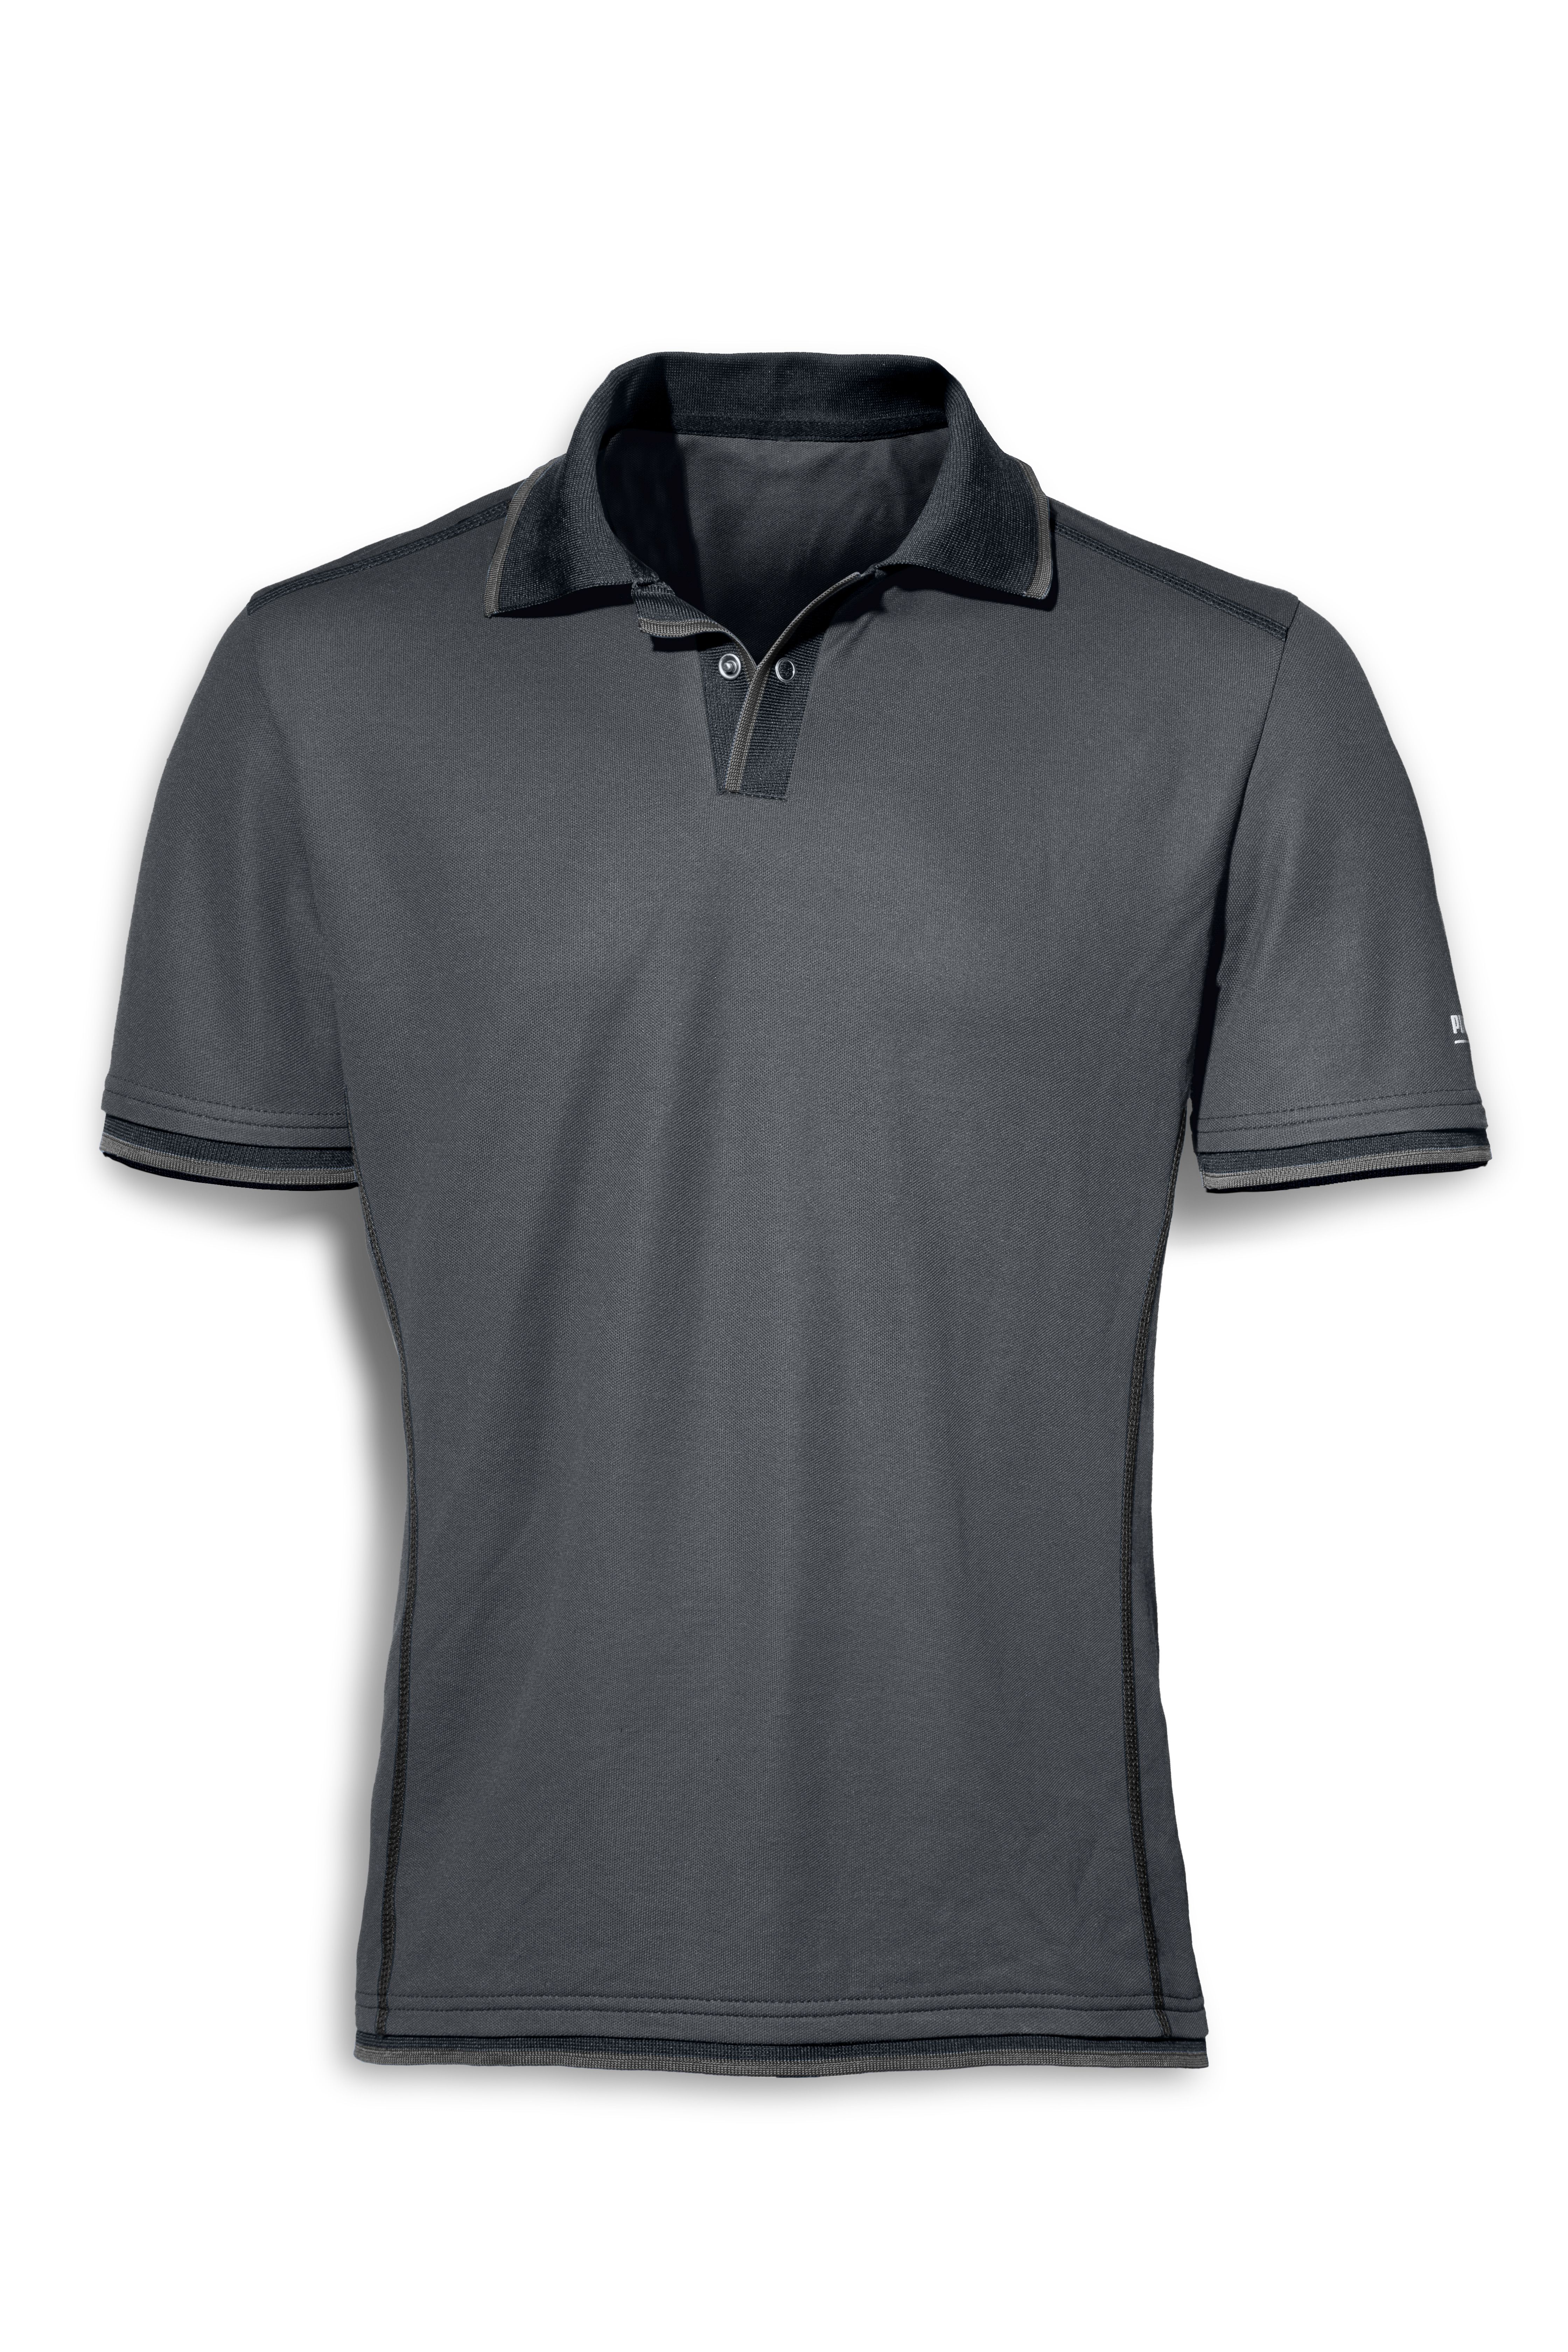 PUMA Work Wear Polo-Shirt CHAMP, Stahlgrau/Carbon, Gr. XL